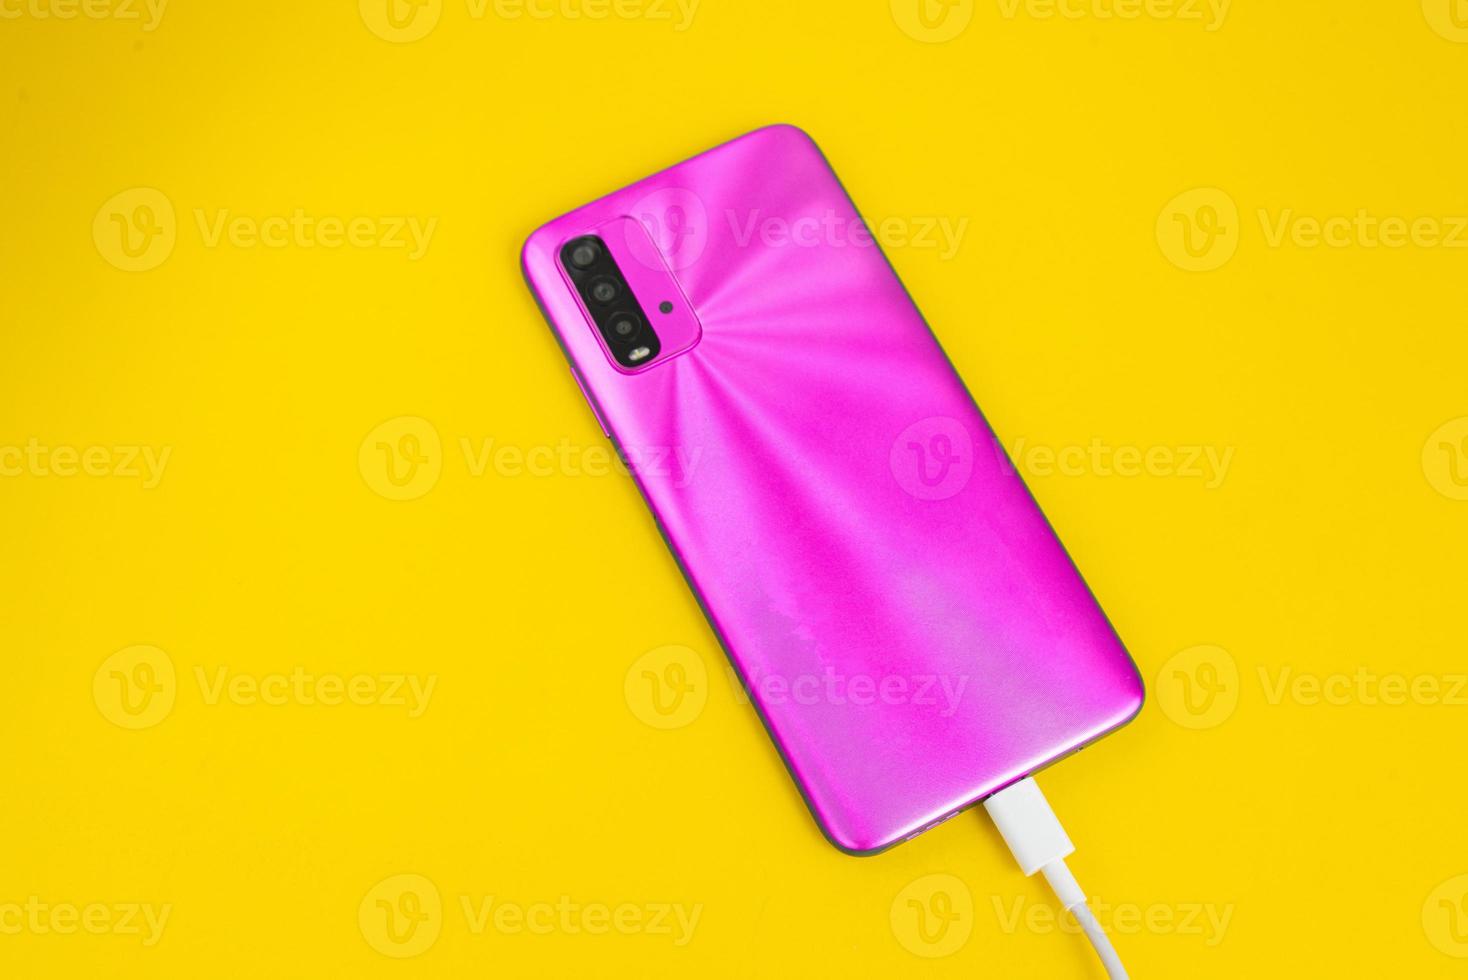 teléfono celular rosa conectado a cable usb tipo c - cargando foto